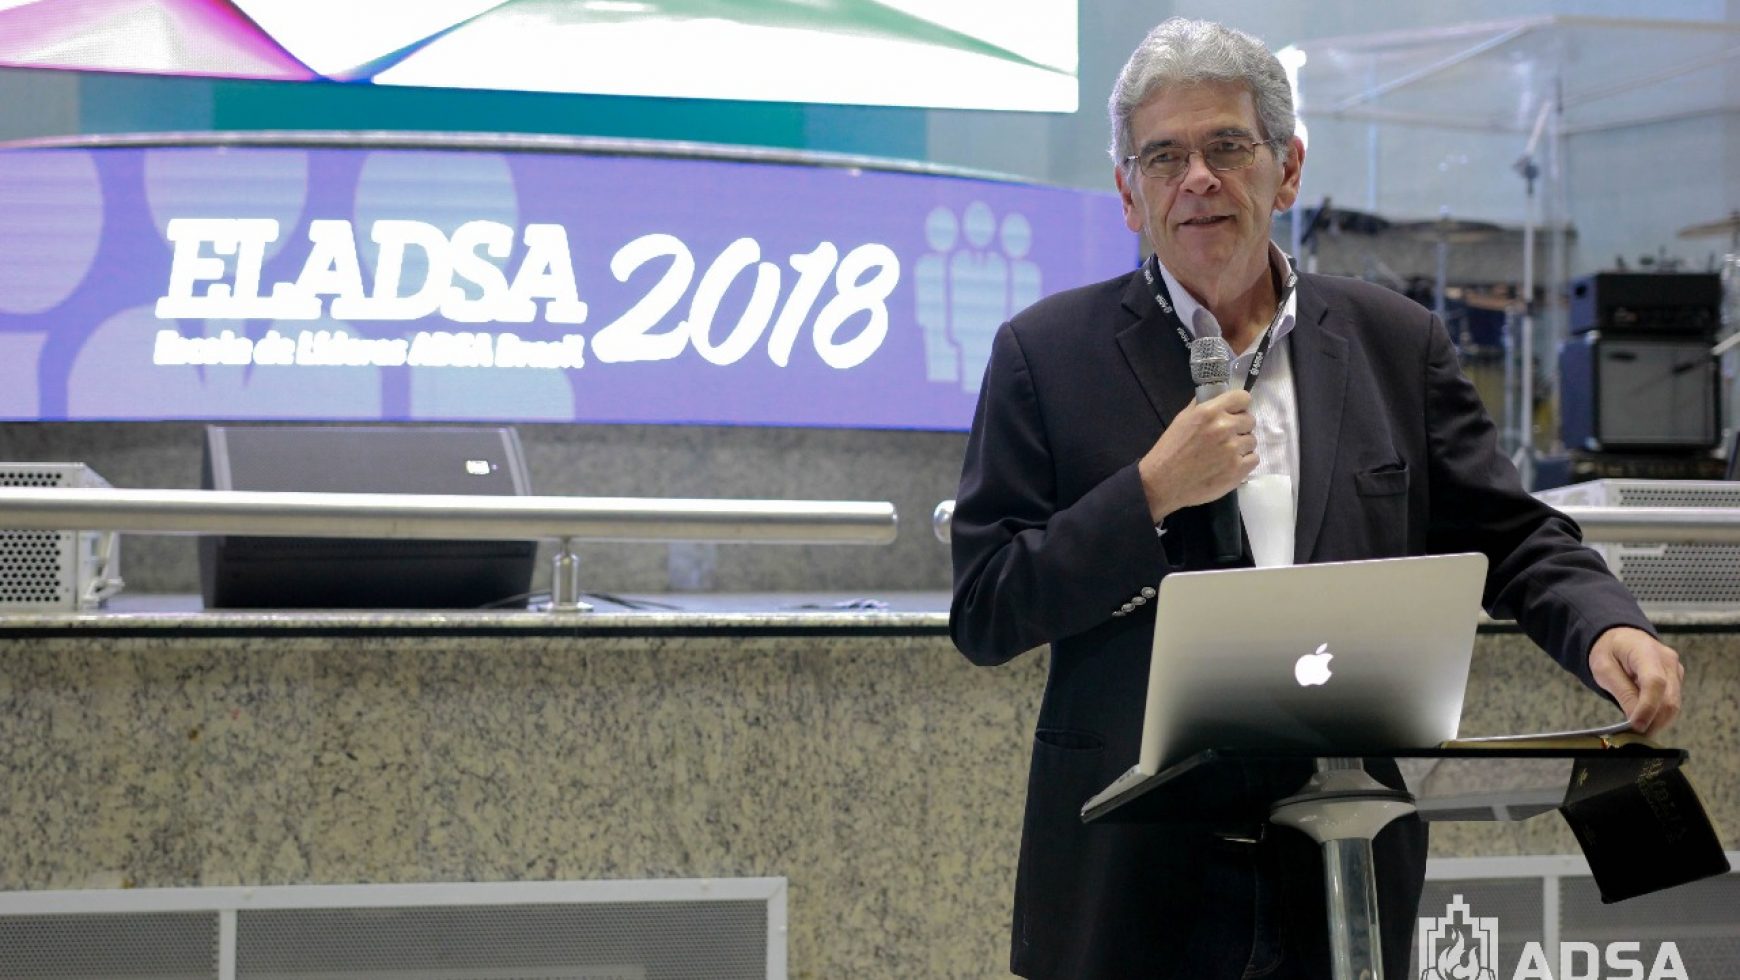 ELADSA 2018 traz como tema “as ciladas da liderança” em palestra ministrada por dr. Elias Dantas